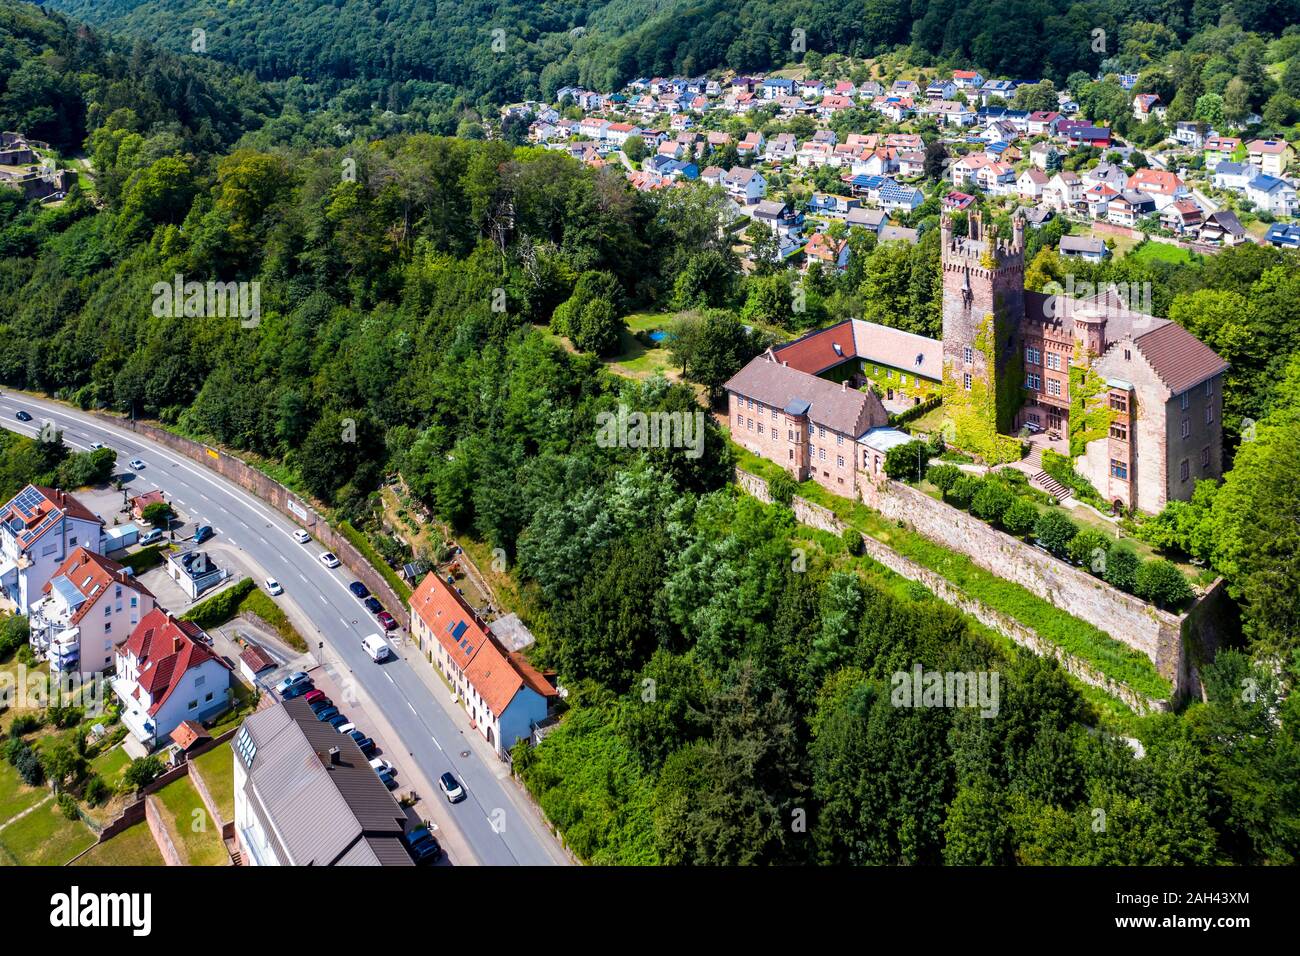 Germany, Baden-Wurttemberg, Neckarsteinach, Aerial view of Mittelburg castle Stock Photo